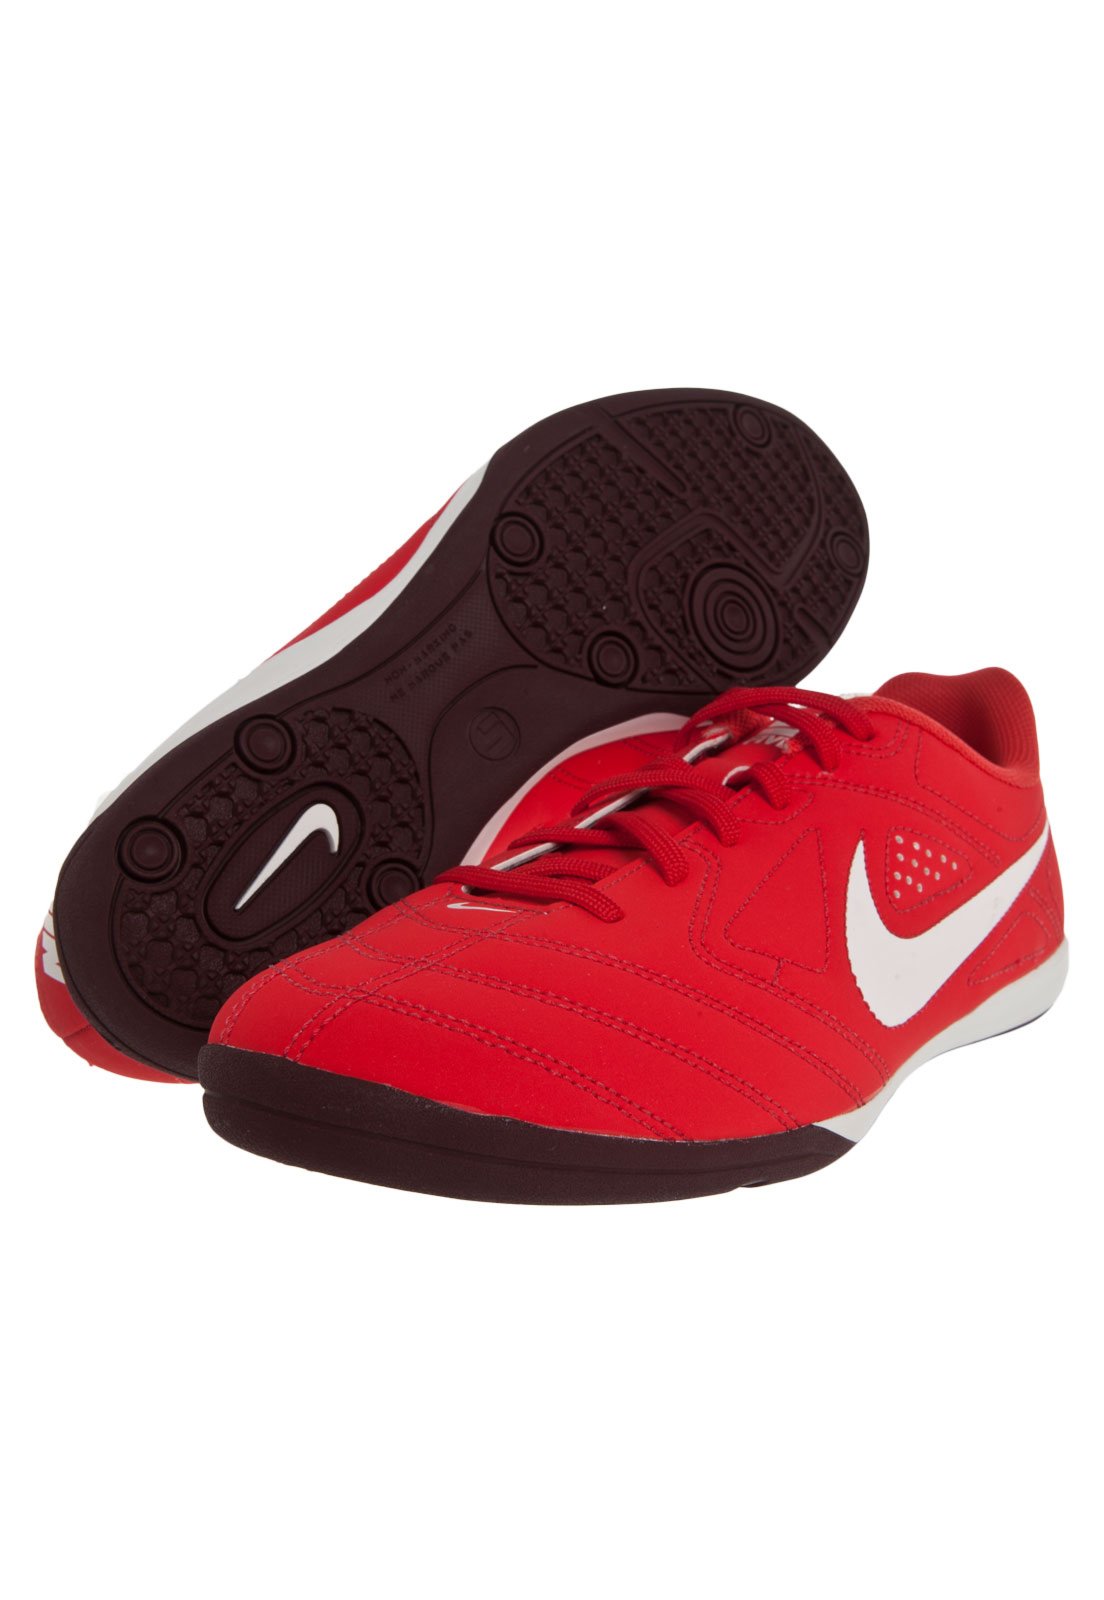 Featured image of post Chuteira Nike Futsal Vermelha Clique e veja os itens que voc deve verificar ao comprar a sua chuteira de futsal